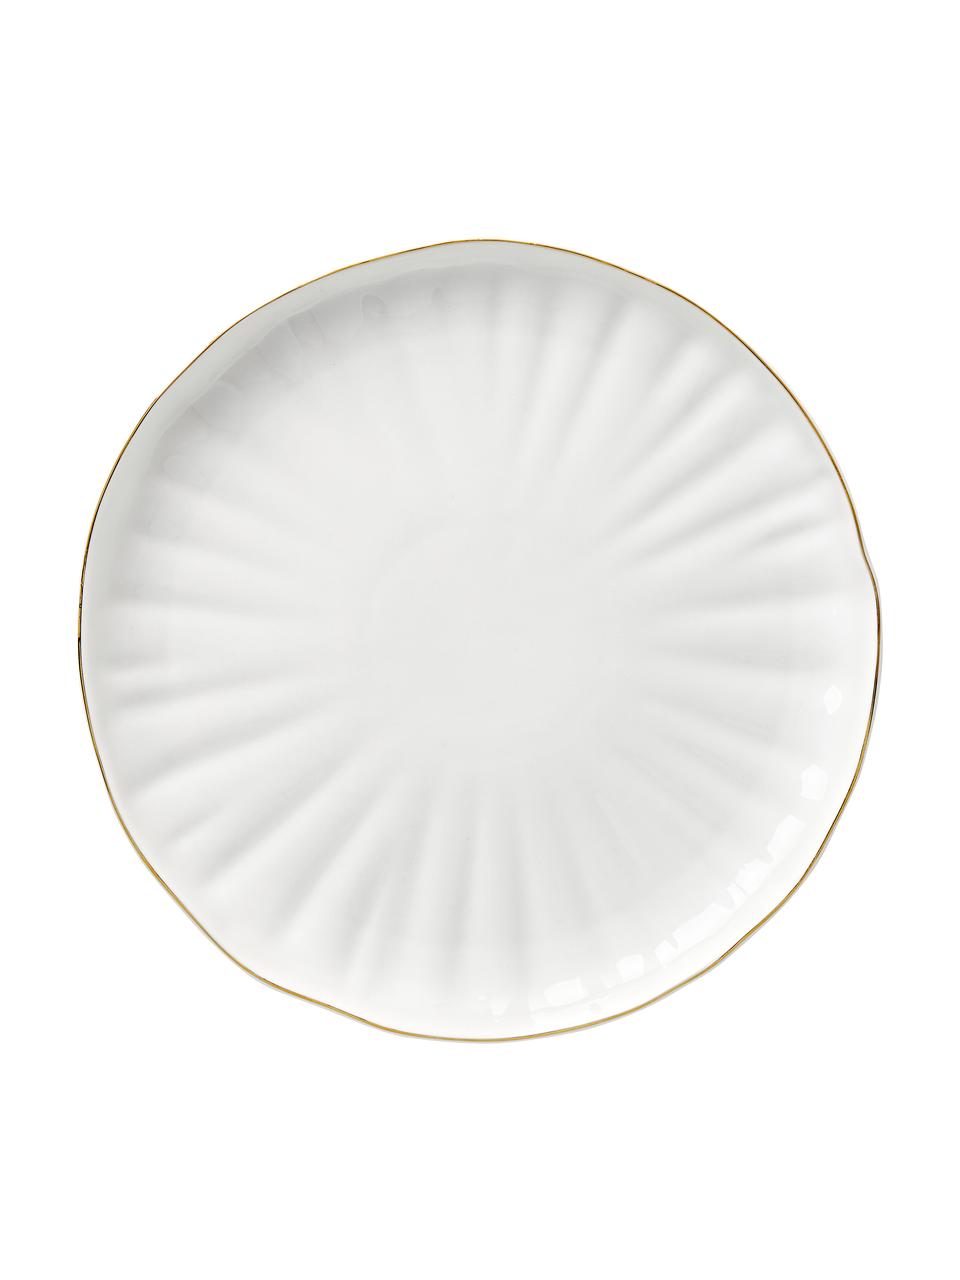 Piatto piano in porcellana con rilievo e bordo dorato Sali 2 pz, Porcellana, Bianco, Ø 26 cm